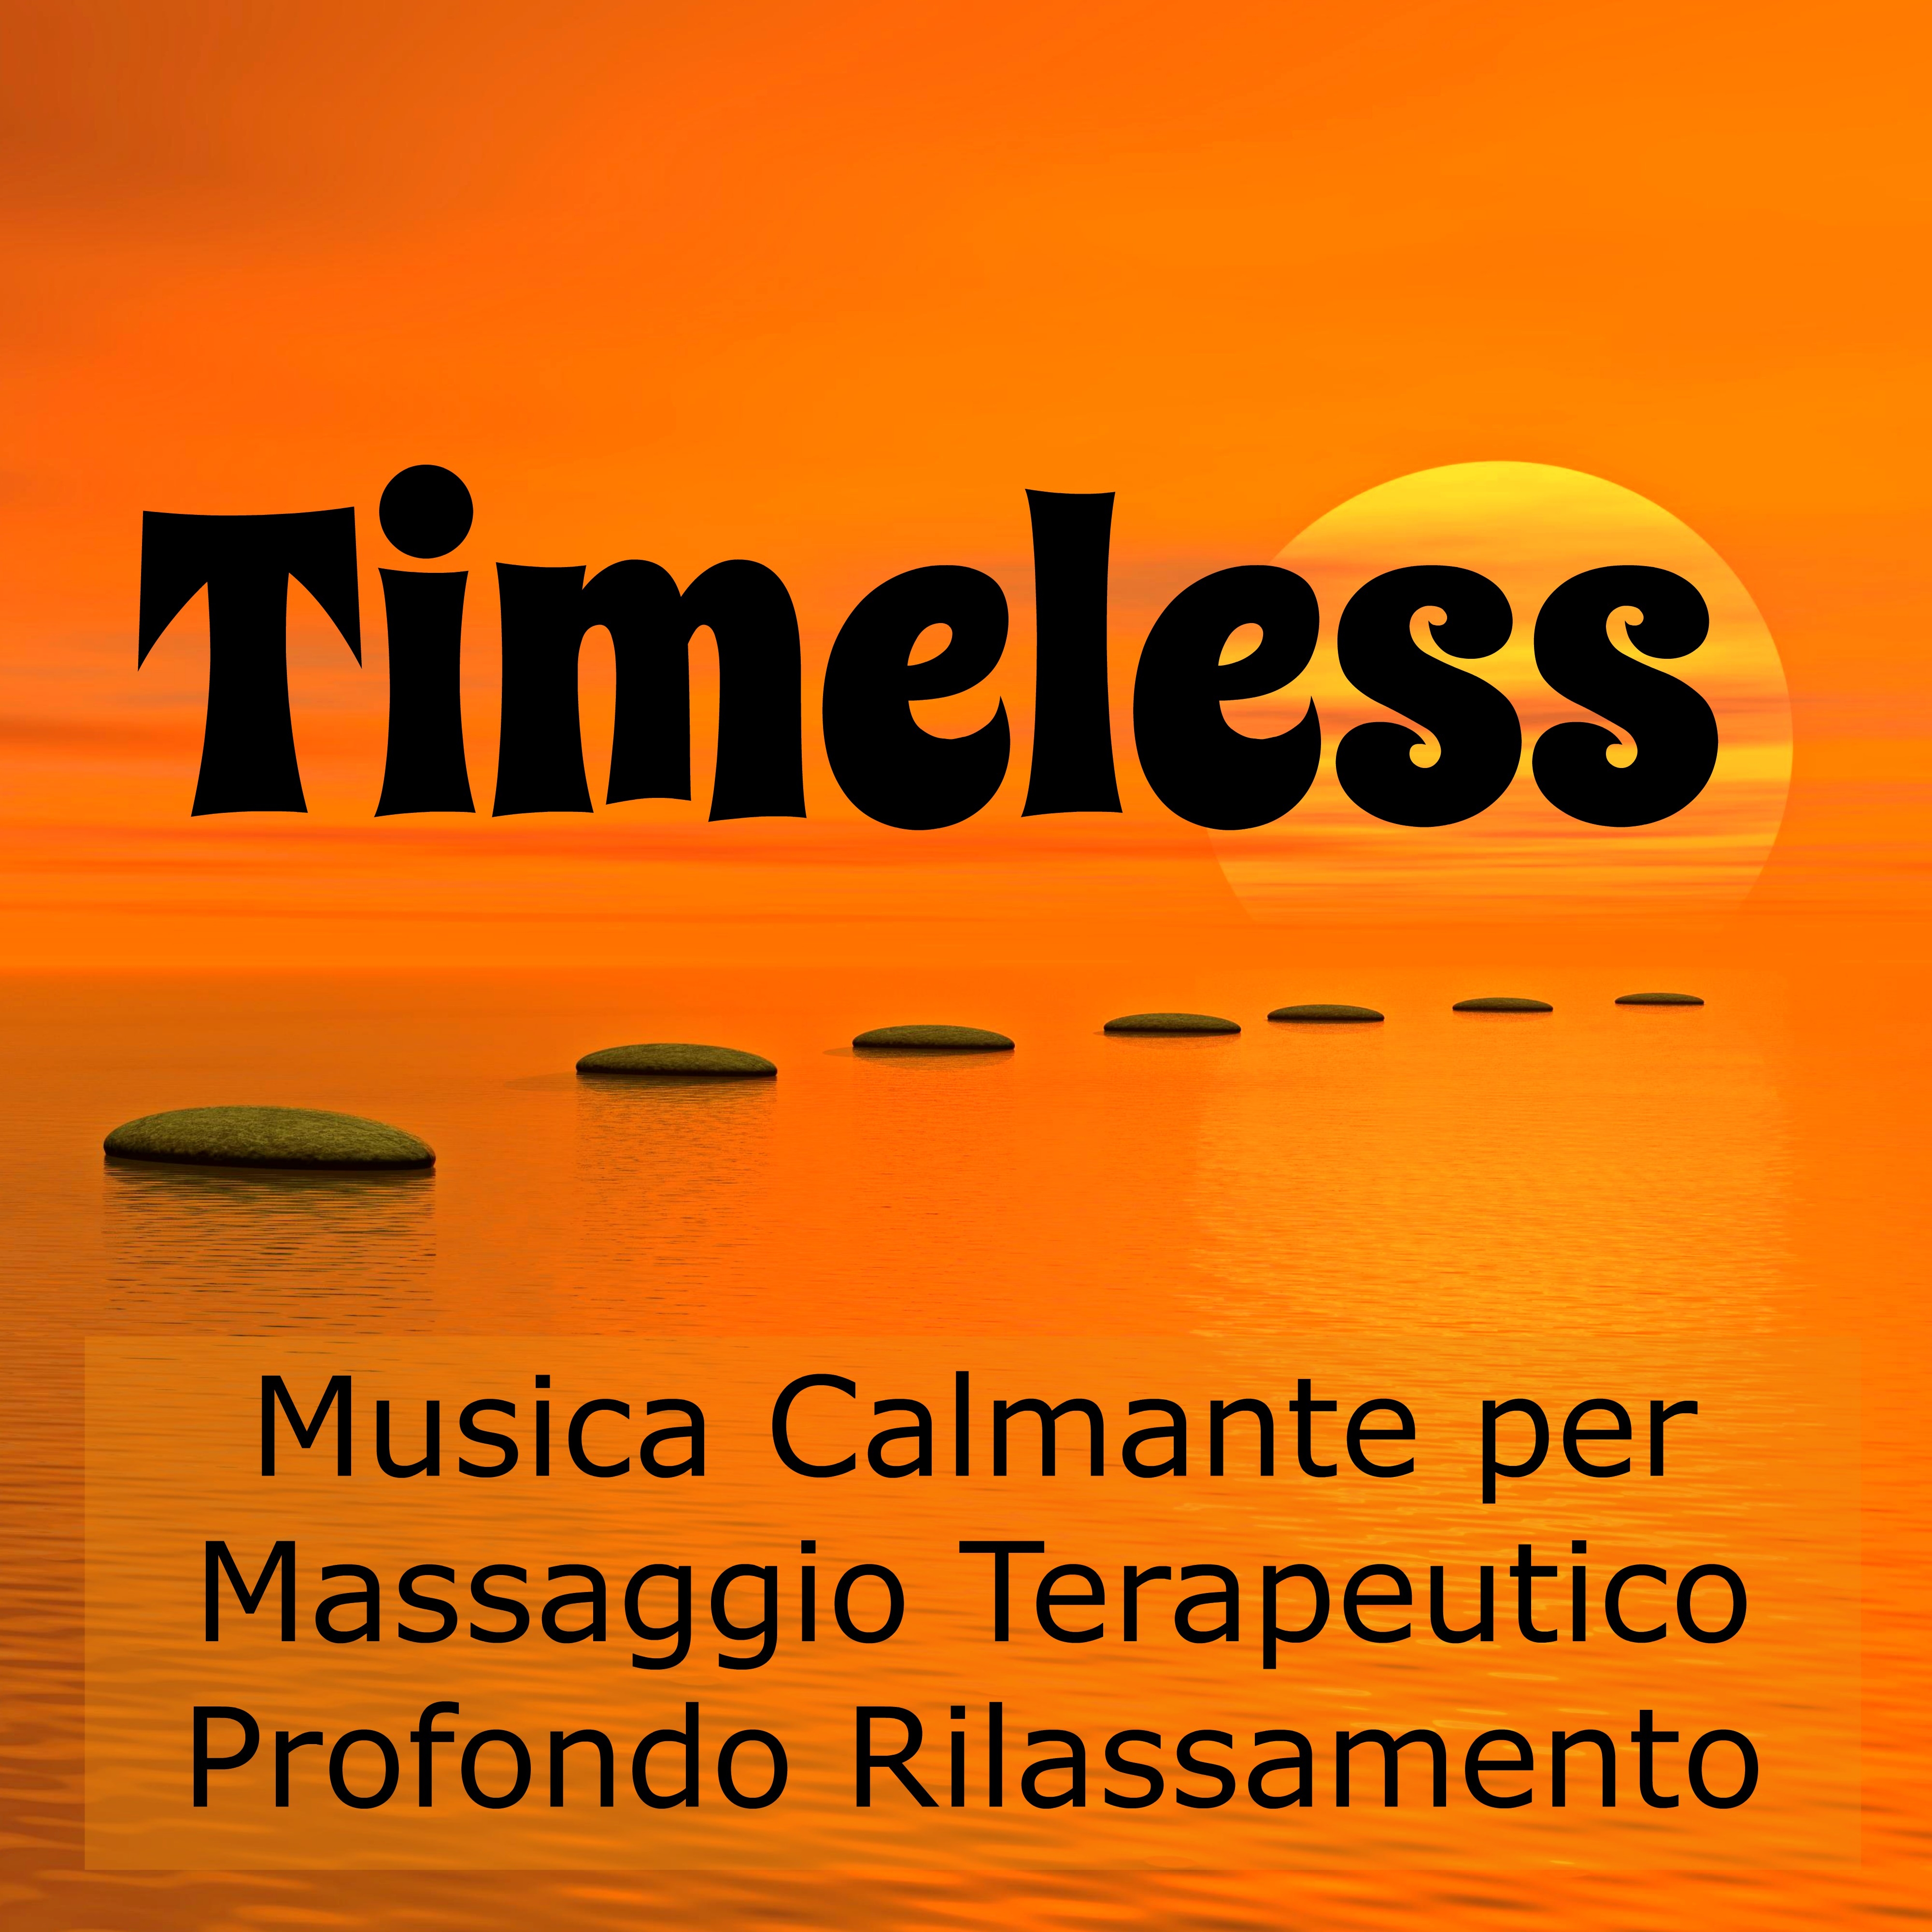 Timeless - Musica Calmante per Massaggio Terapeutico Profondo Rilassamento Cura del Corpo e della Mente con Suoni della Natura Soft Strumentali